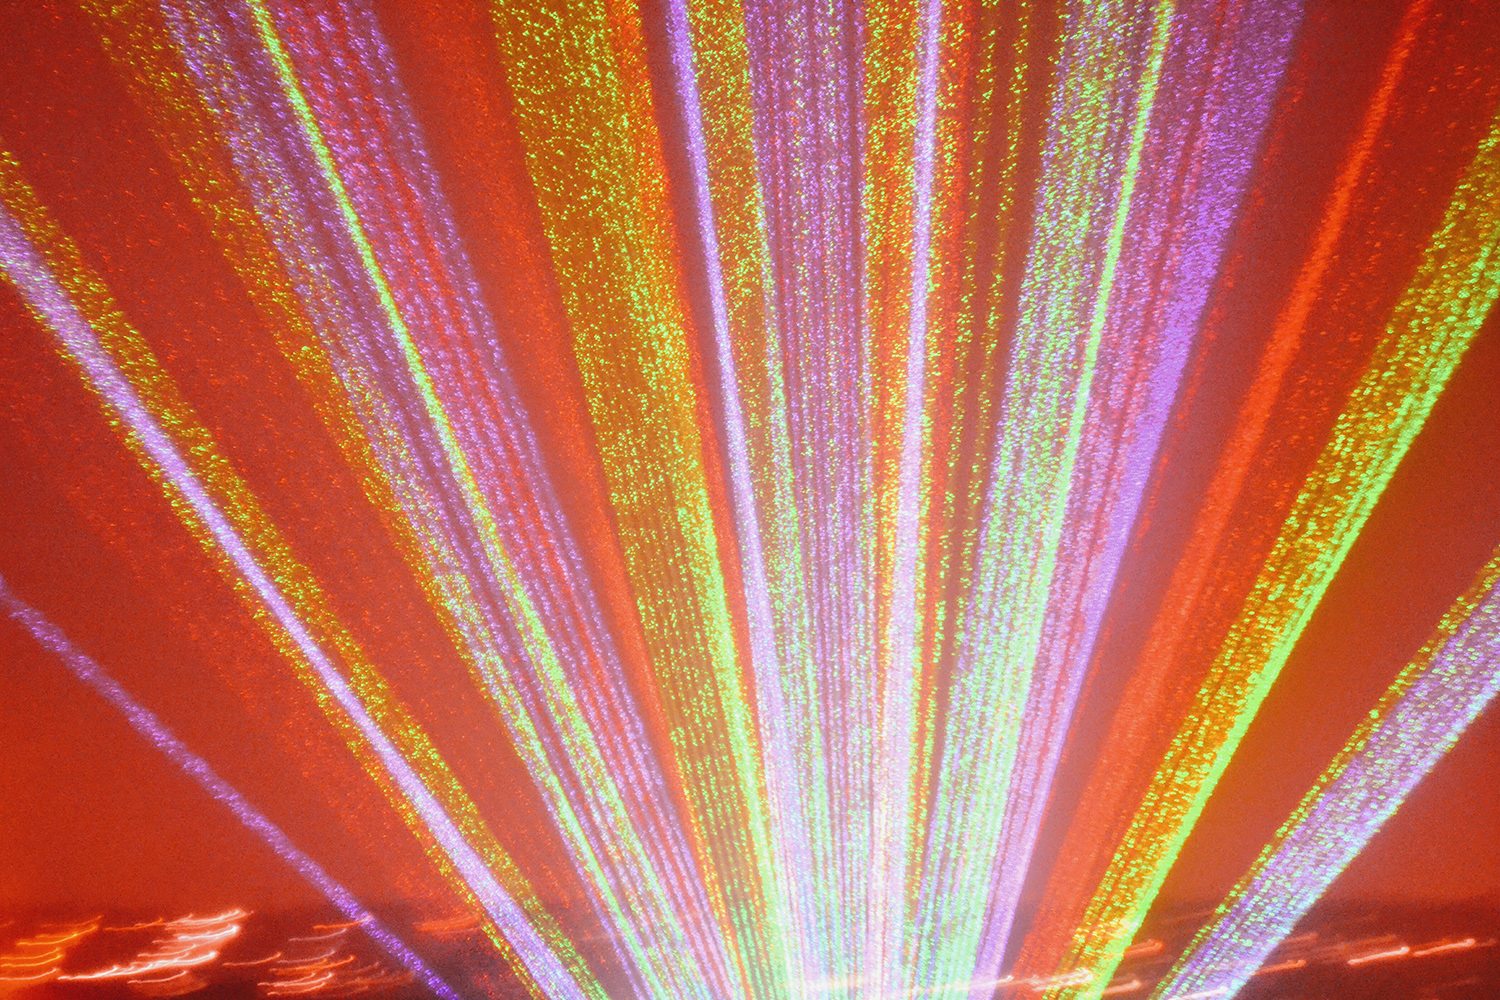 Bonfire night doprovází i světelné a laserové show. Foto: Barbora Zelenková, Alexandra Palace (Londýn), 2015.